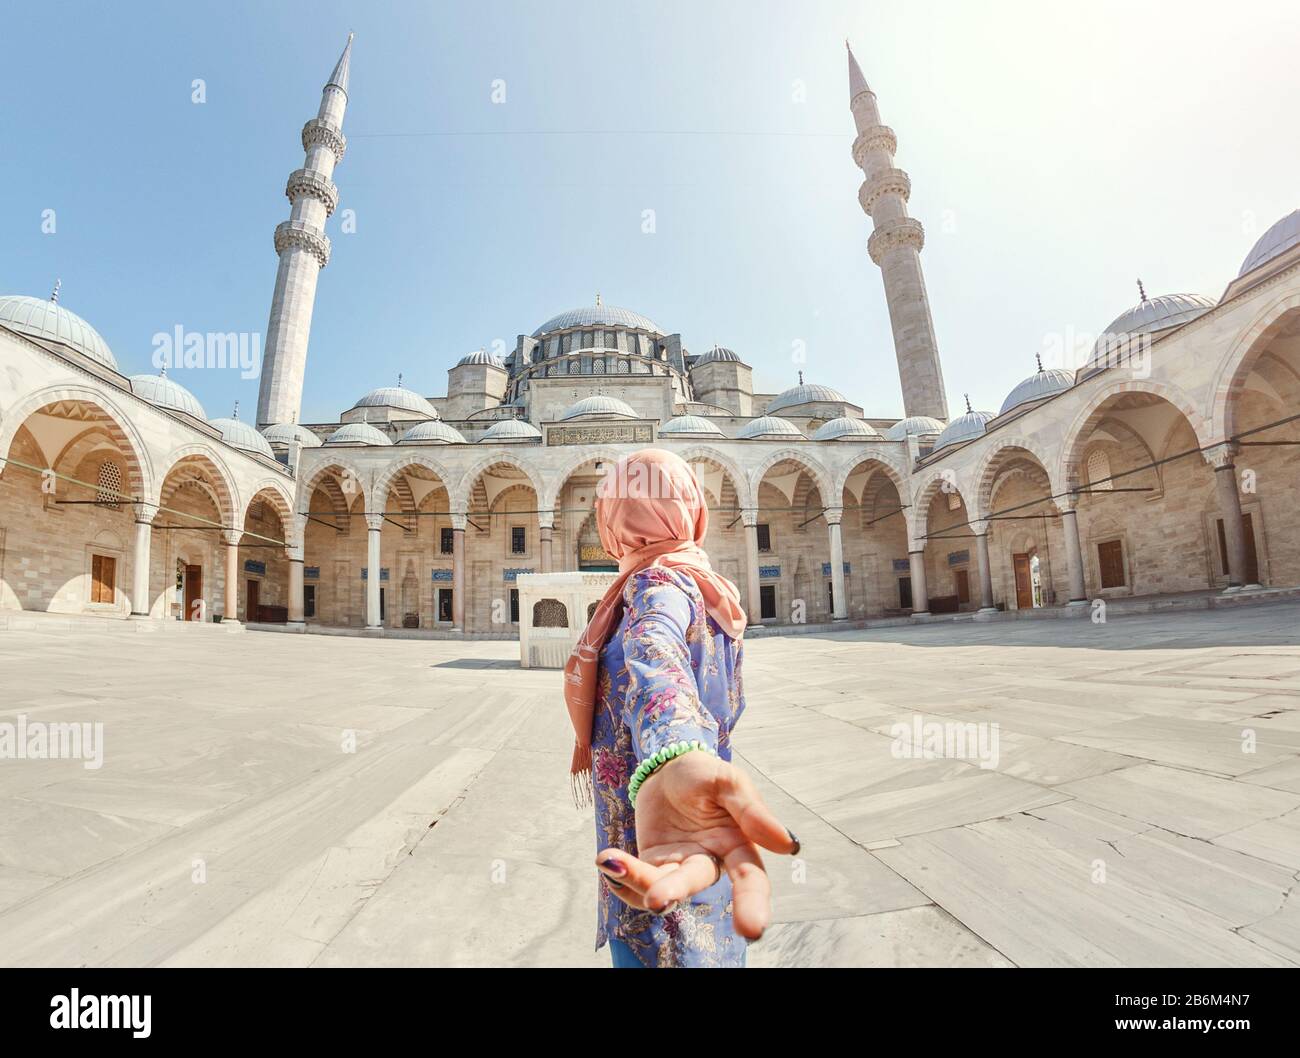 Suivez-moi. Une femme musulmane dans un foulard conduit son ami à la mosquée turque Suleymaniye, voyage et concept de religion. Banque D'Images